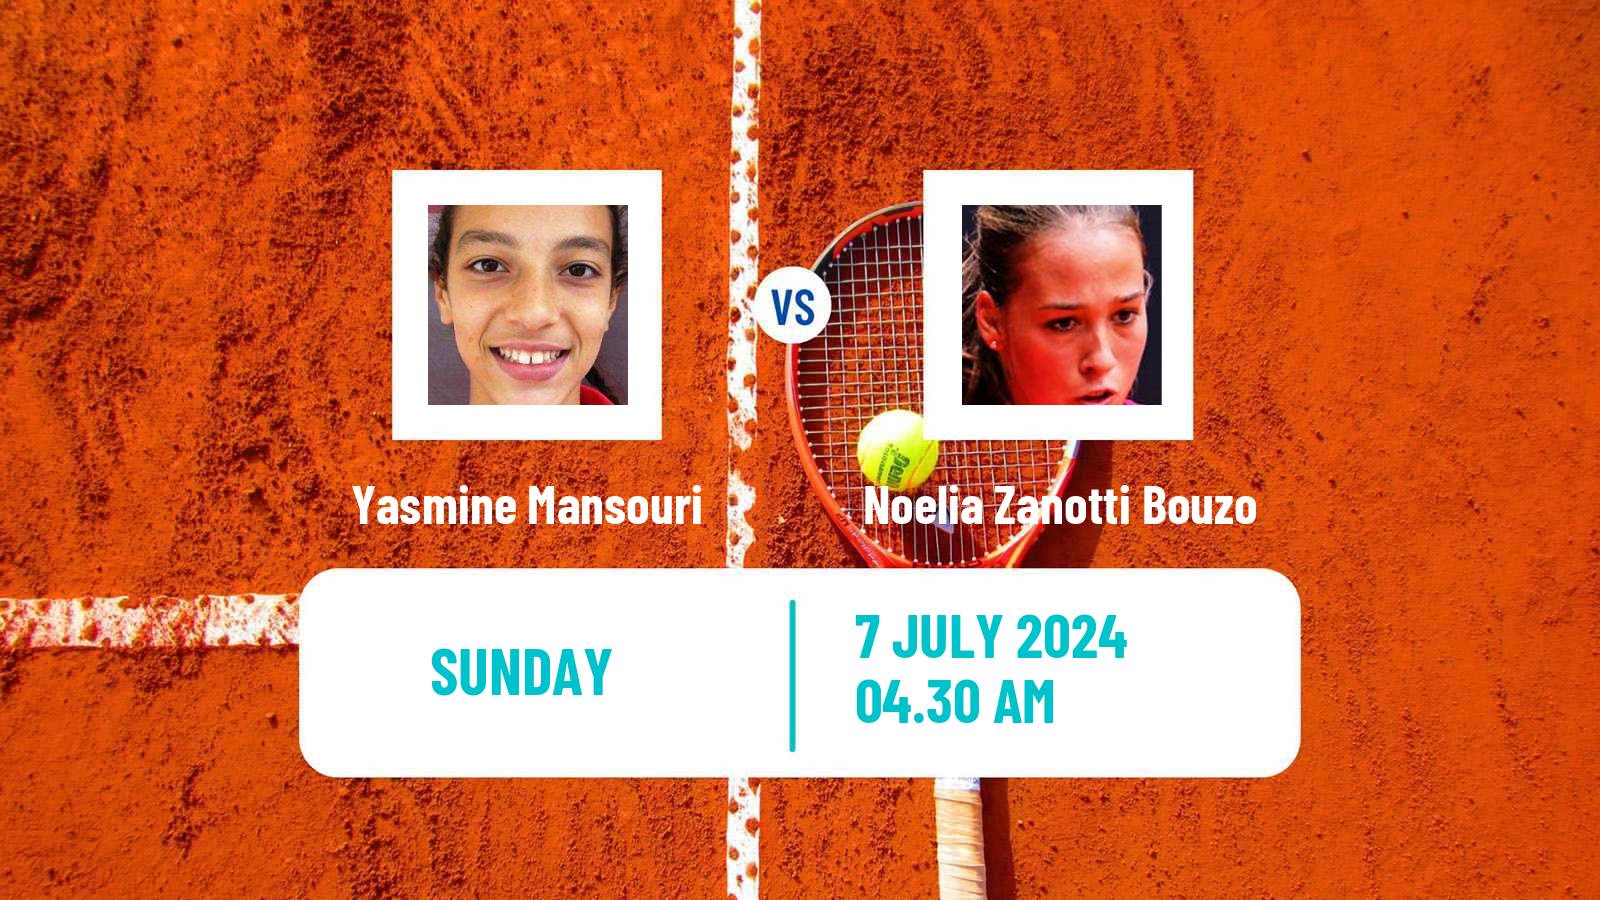 Tennis ITF W15 Monastir 25 Women Yasmine Mansouri - Noelia Zanotti Bouzo